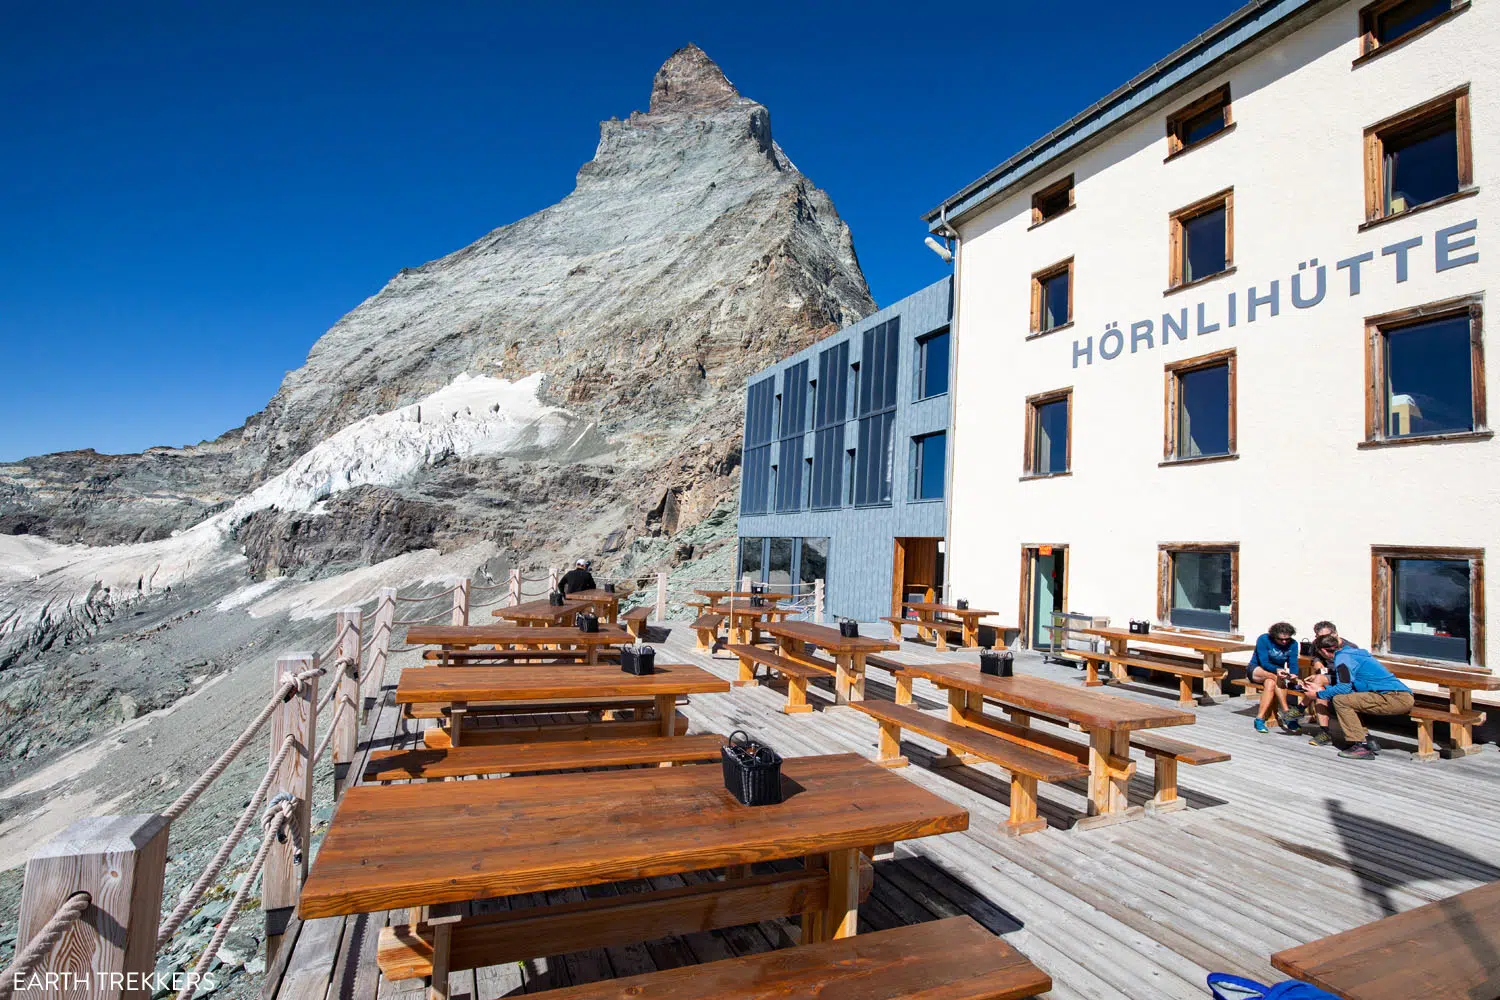 Hornlihutte | Best Things to Do in Zermatt